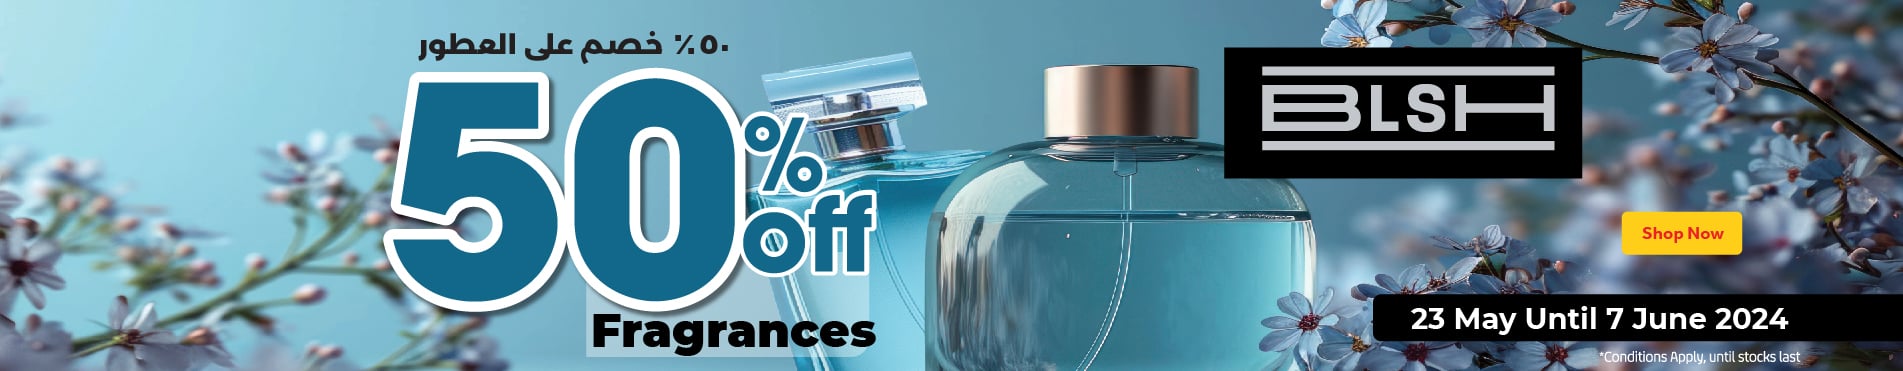 Fragrance 50% Off